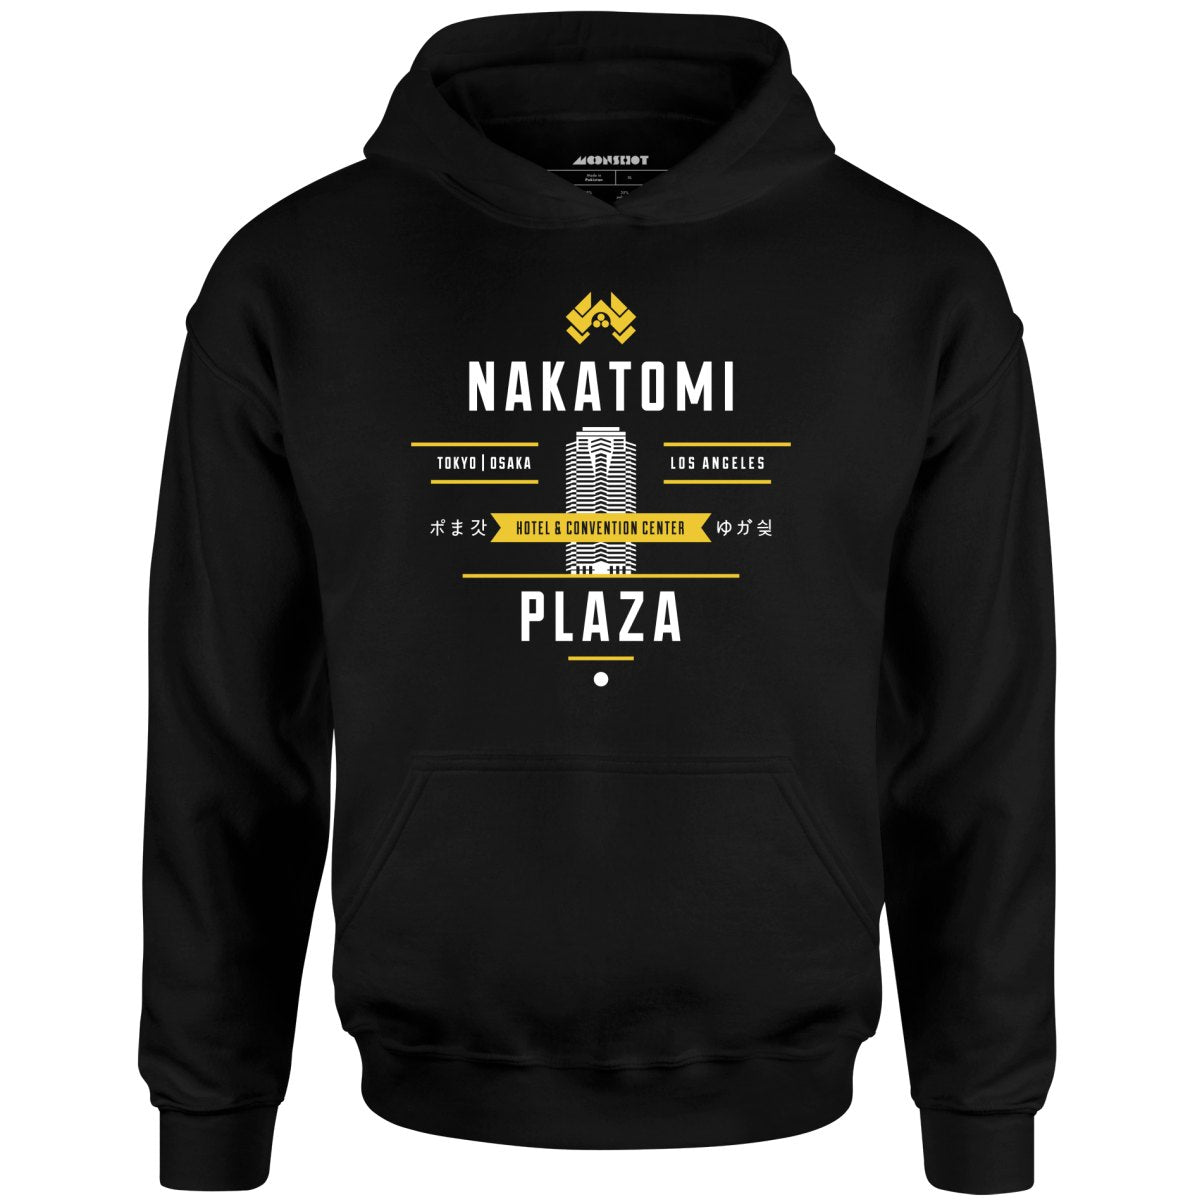 Nakatomi Plaza - Unisex Hoodie